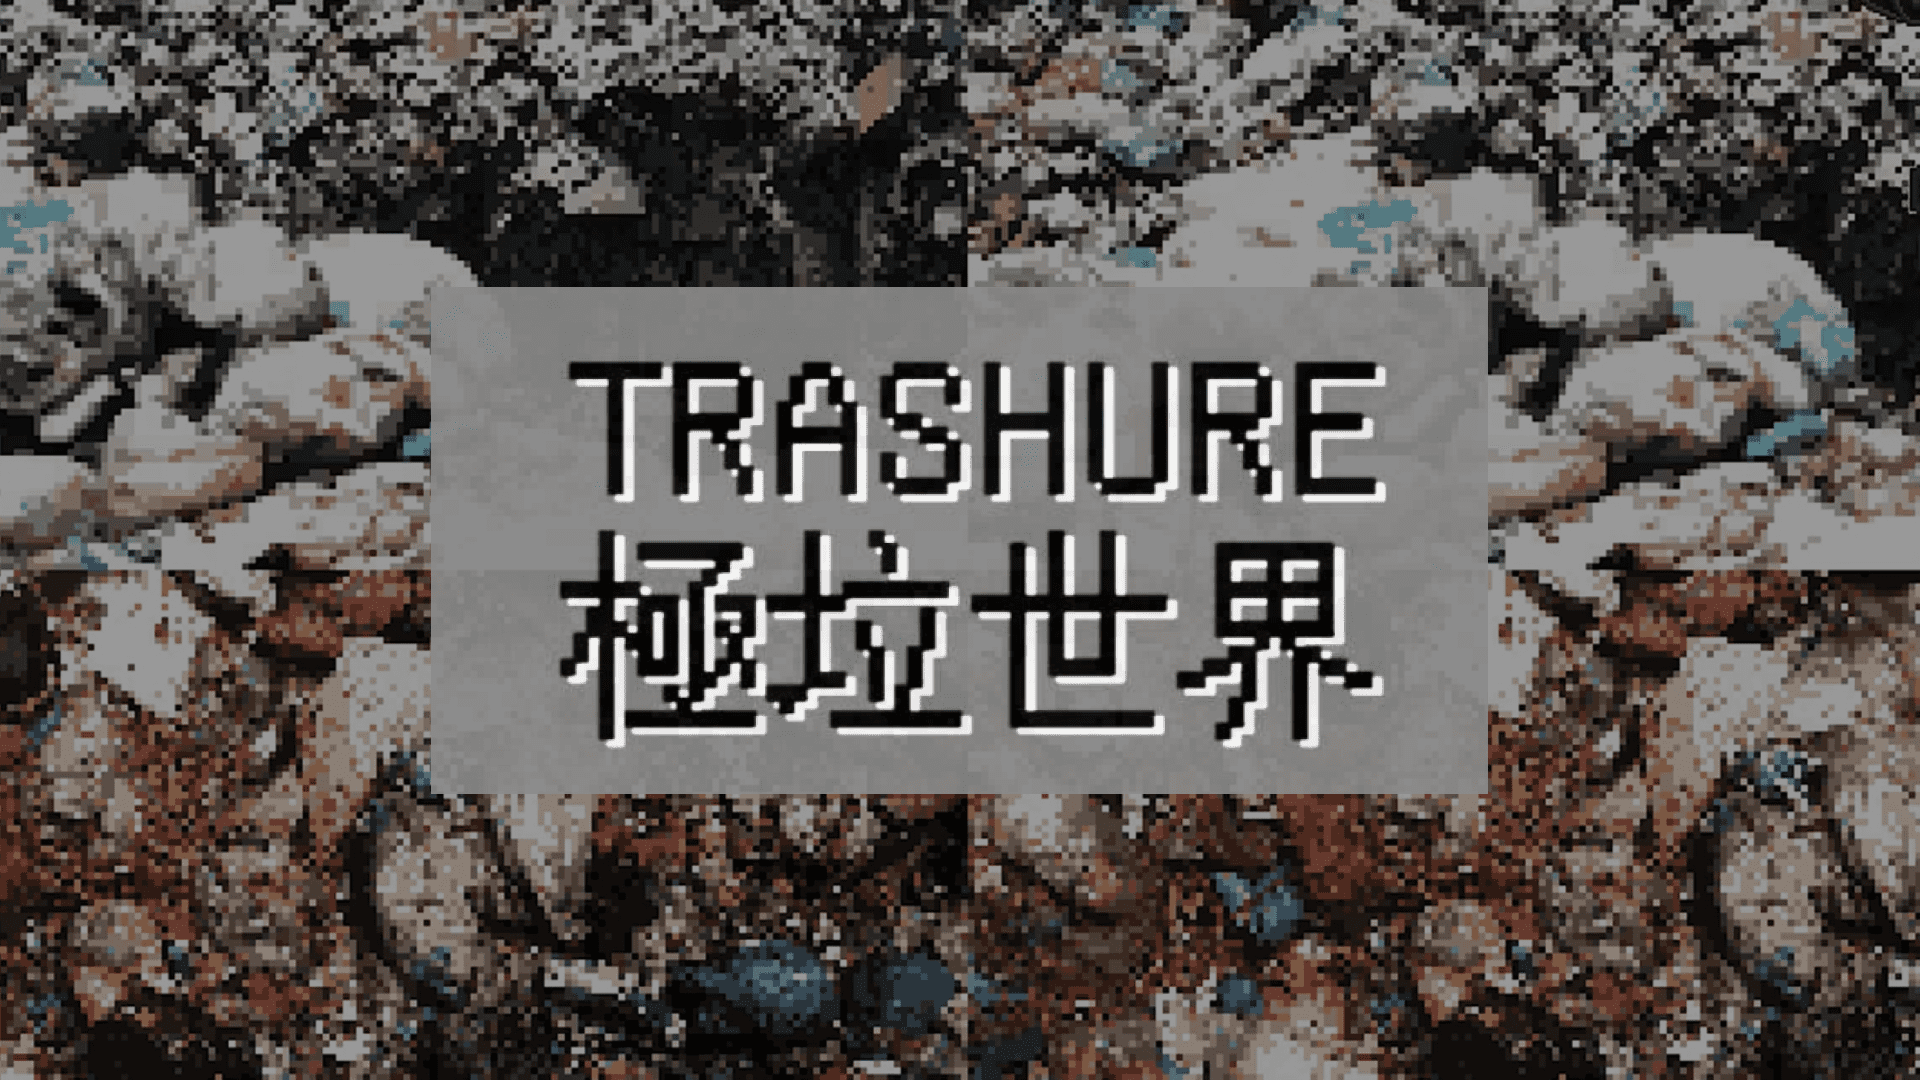 極垃世界 Trashure - 以環保教育遊戲為主的二手舊物交易平台